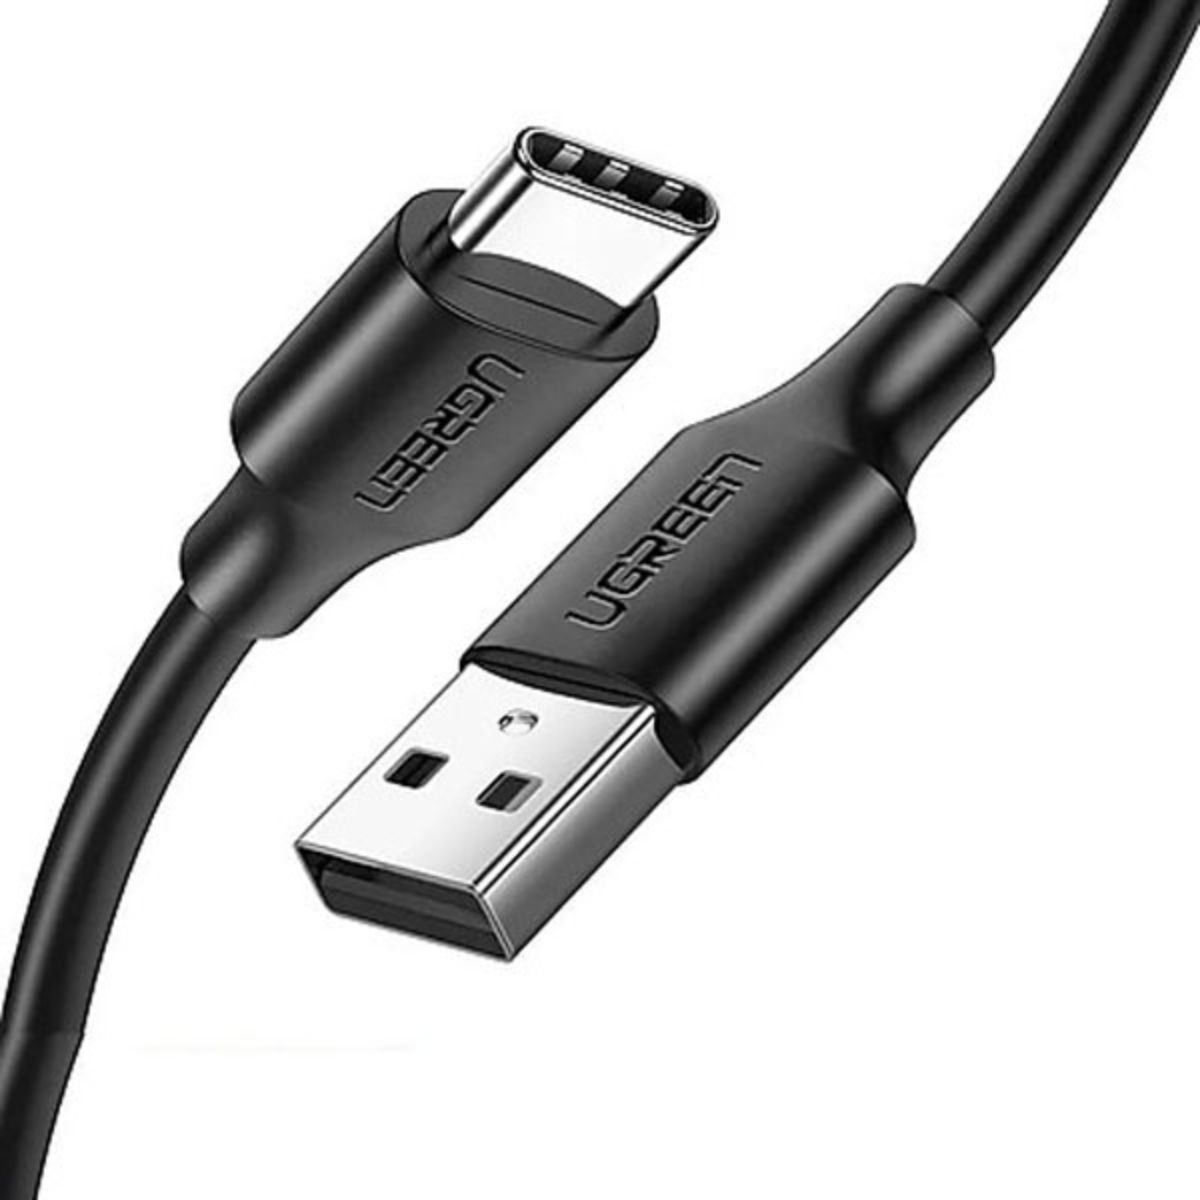 Cáp sạc USB 2.0 sang USB type C Ugreen 60117 US287 chiều dài 1,5m, màu đen